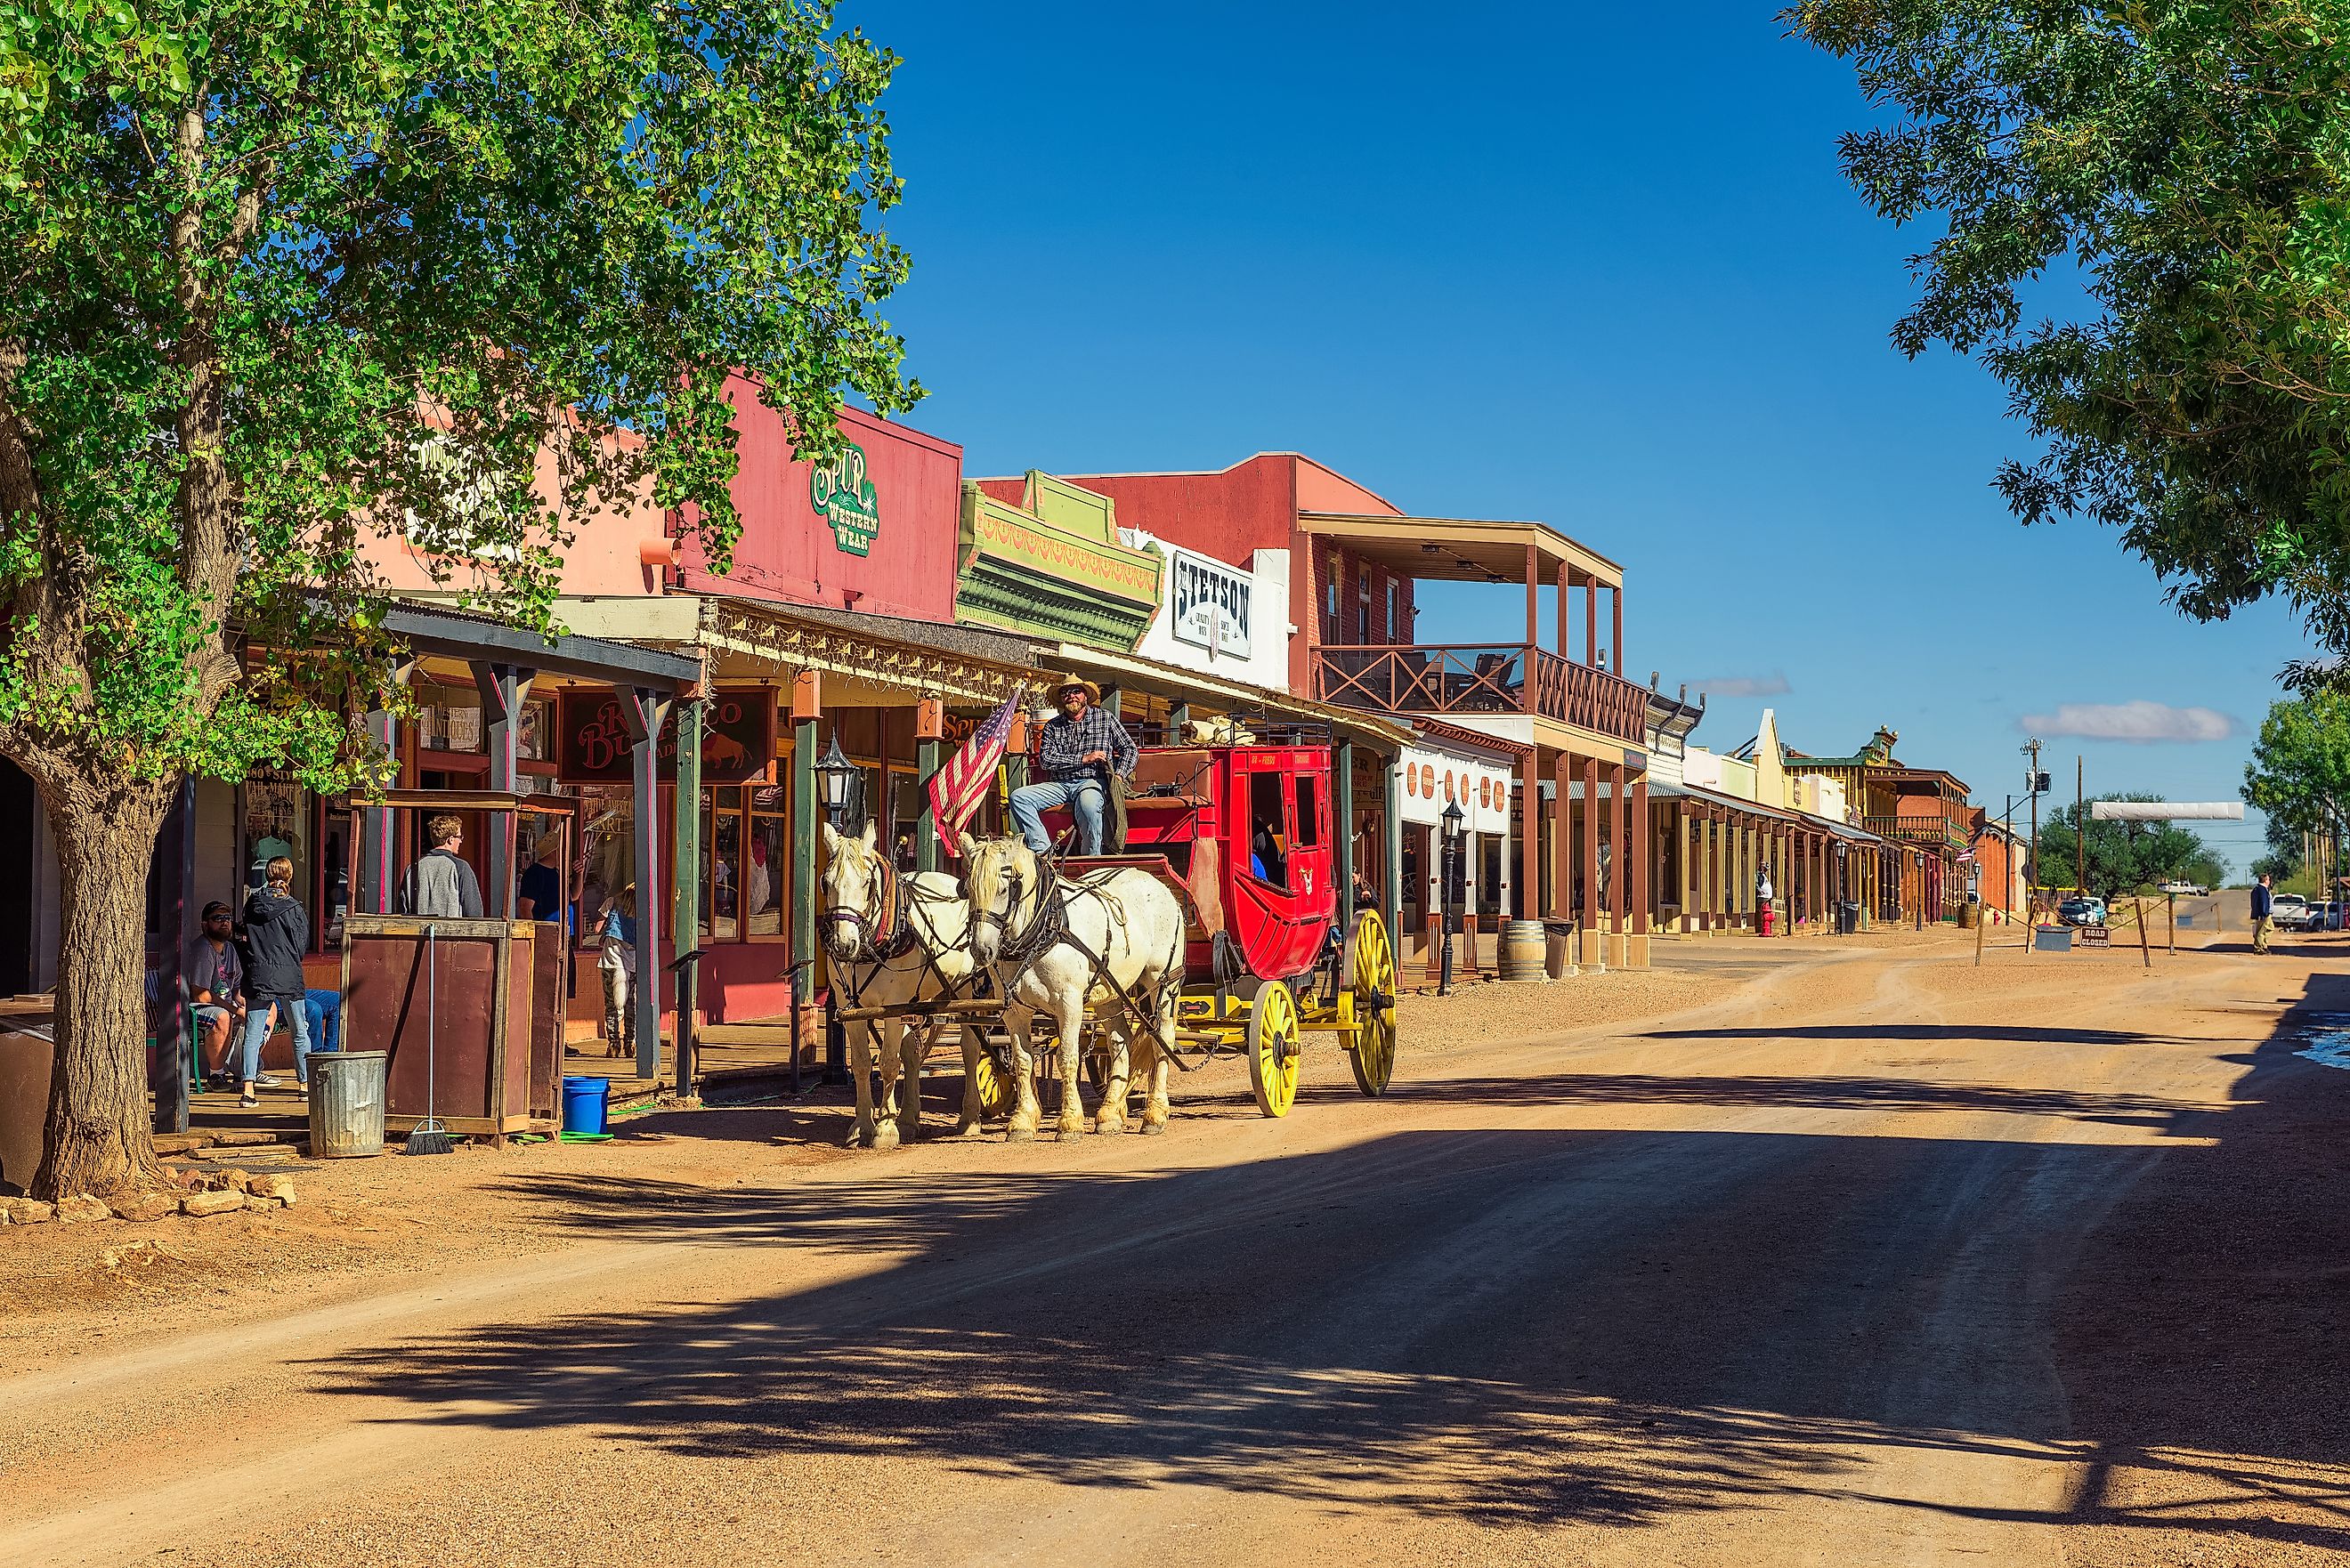 Historic Allen street in Tombstone, Arizona. Editorial credit: Nick Fox / Shutterstock.com